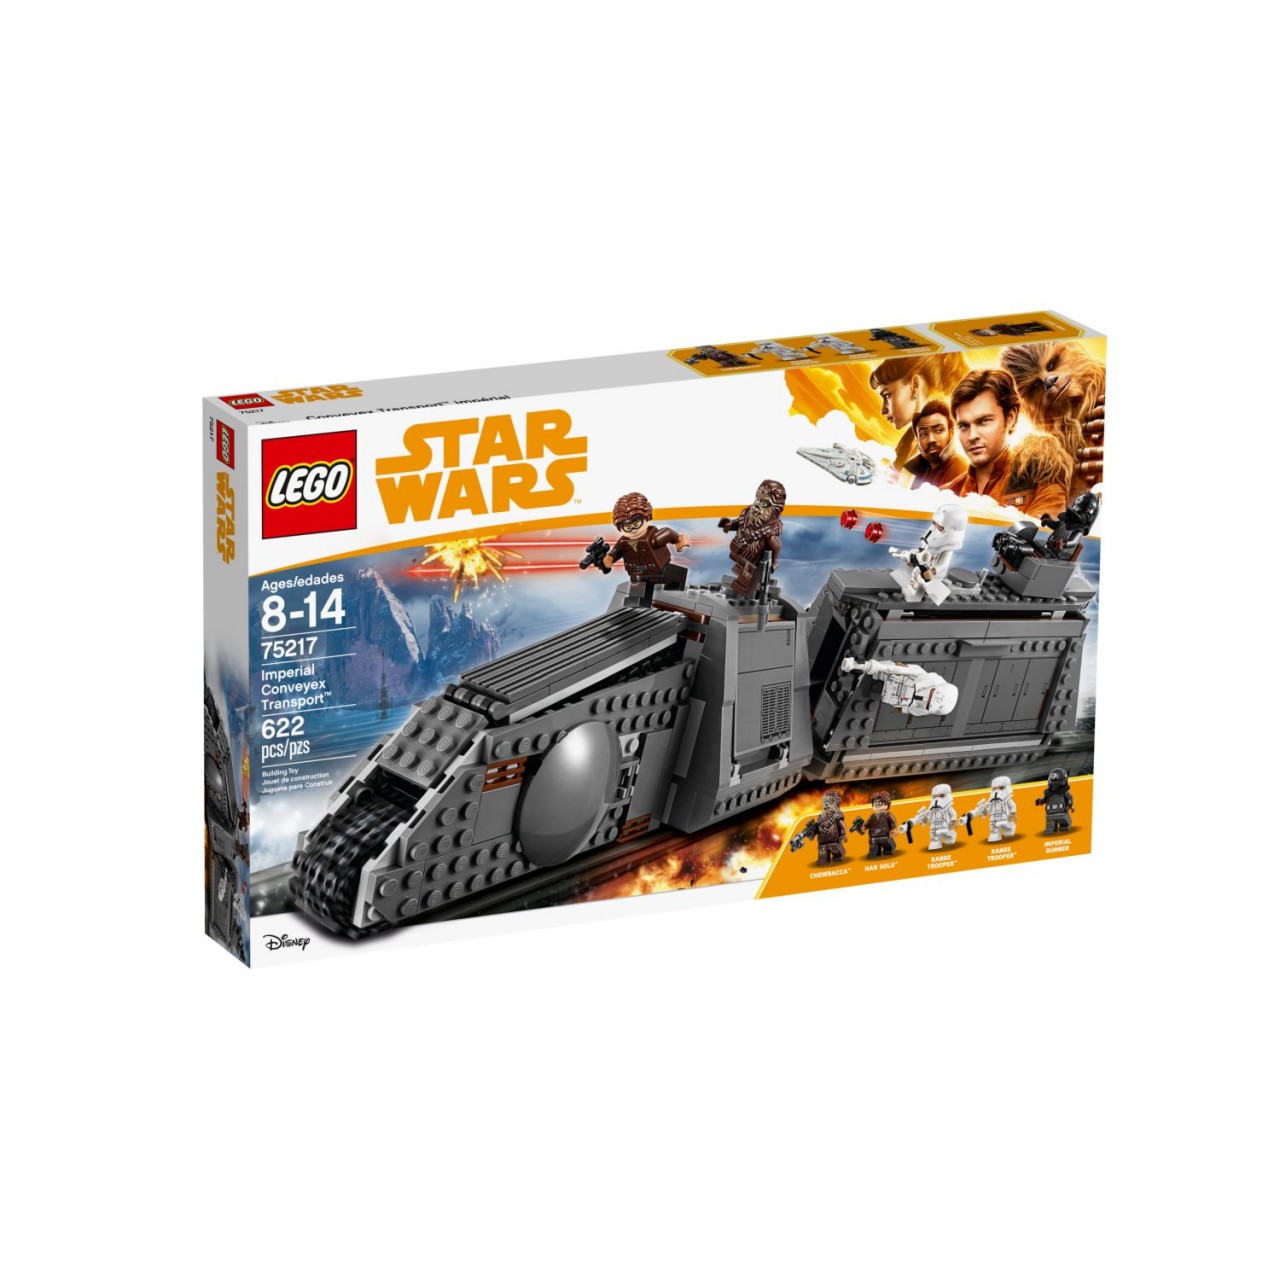 LEGO STAR WARS 75217 Imperial Conveyex Transport